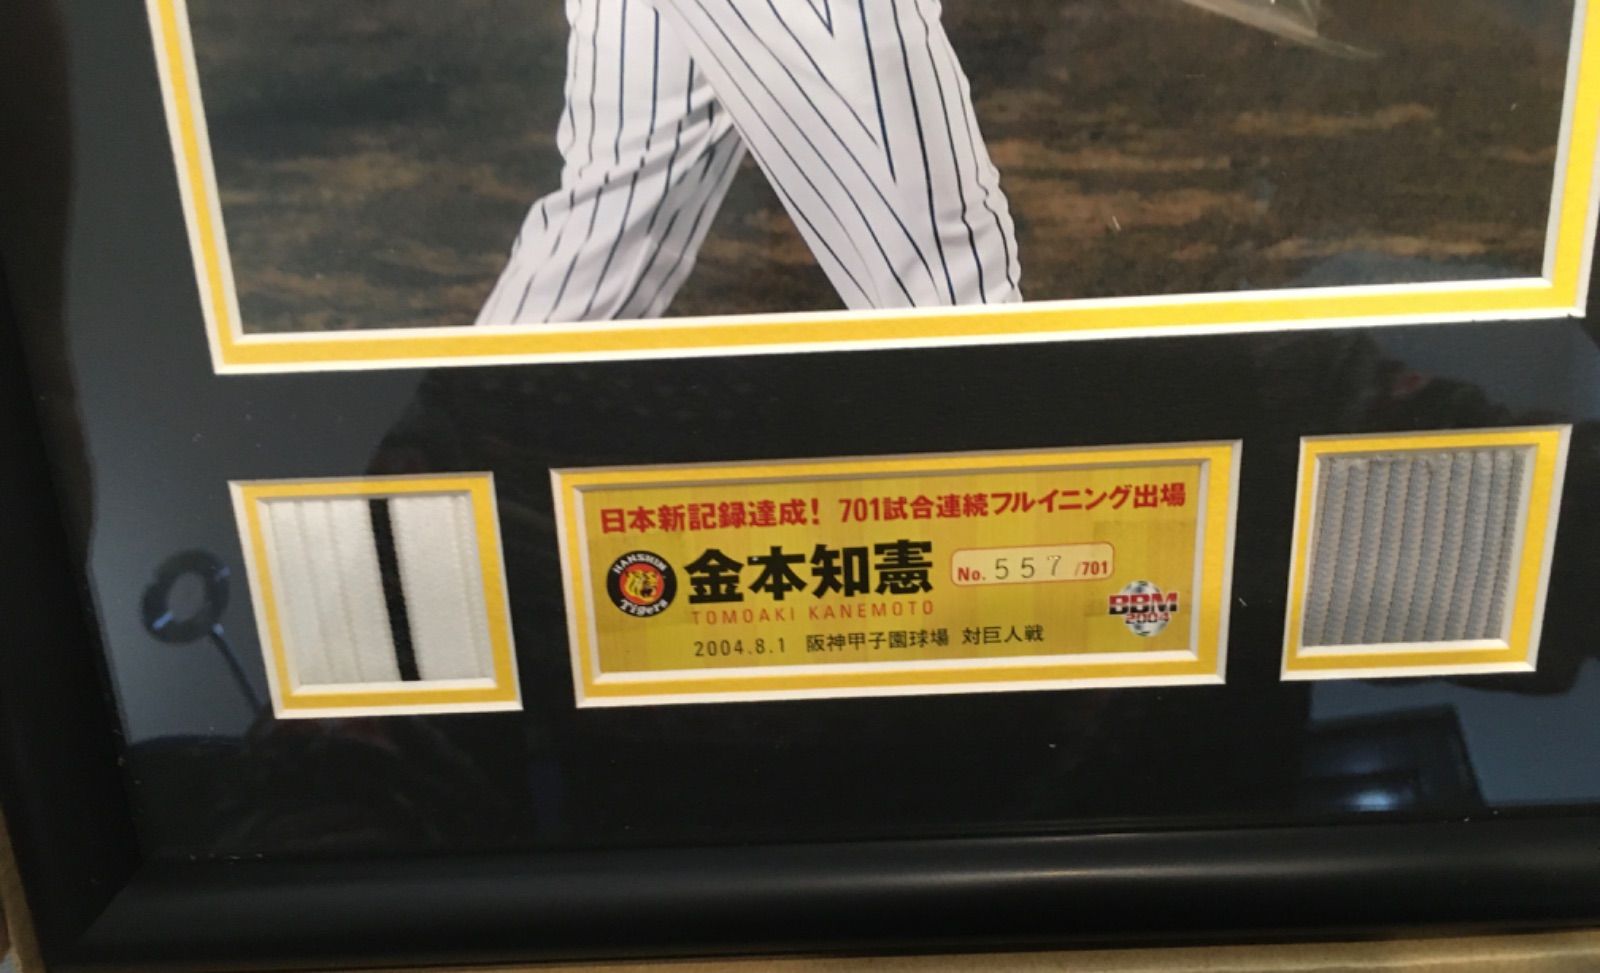 阪神タイガース 金本知憲 701試合フルイニング出場 記念パネル-